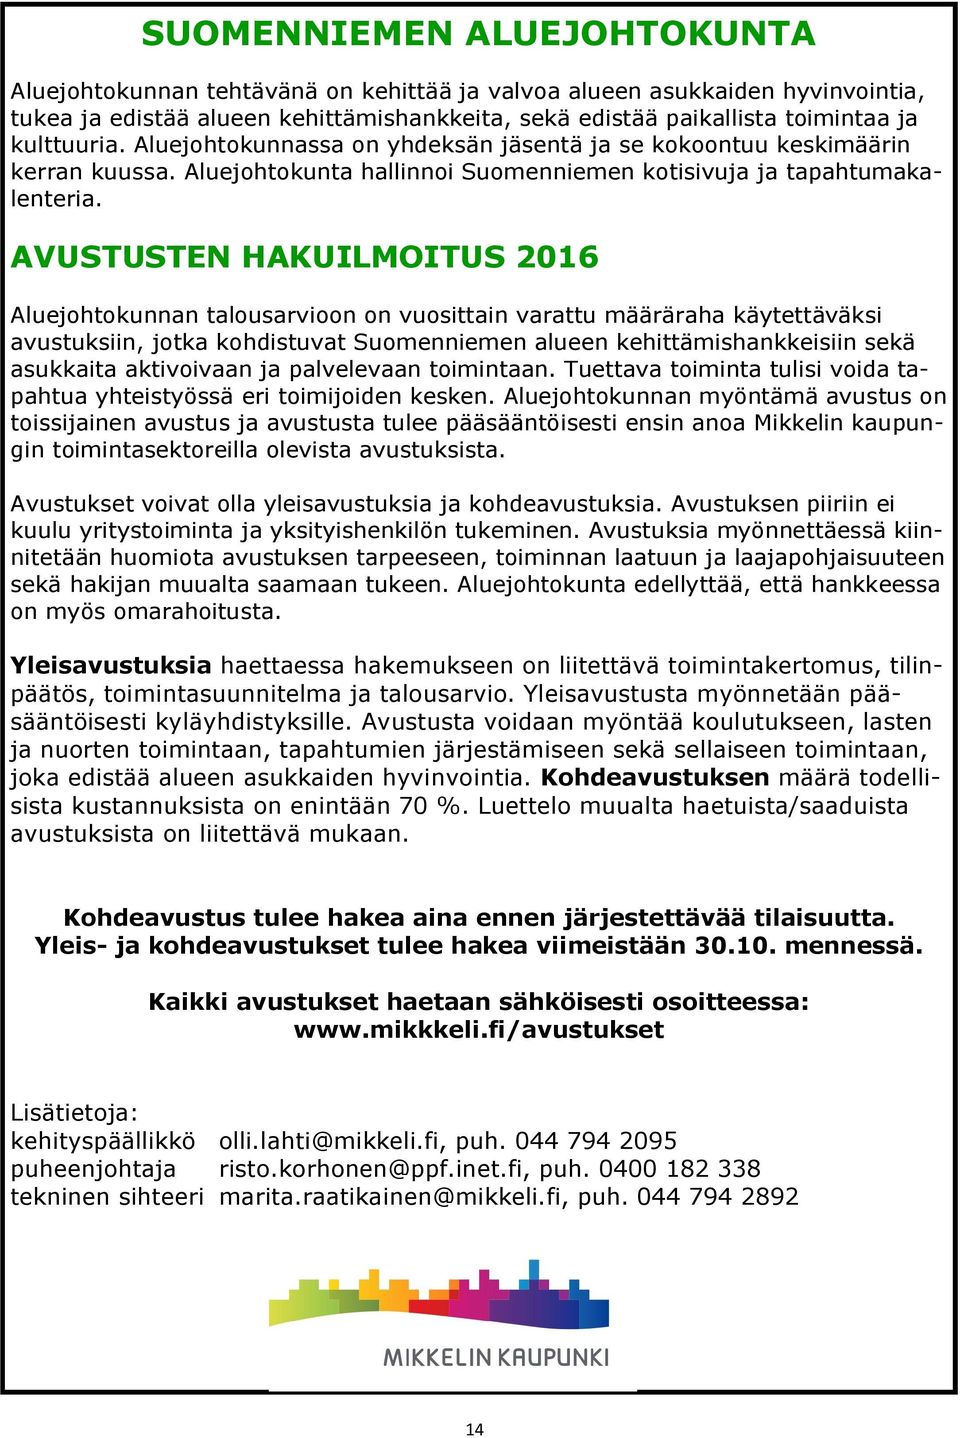 AVUSTUSTEN HAKUILMOITUS 2016 Aluejohtokunnan talousarvioon on vuosittain varattu määräraha käytettäväksi avustuksiin, jotka kohdistuvat Suomenniemen alueen kehittämishankkeisiin sekä asukkaita